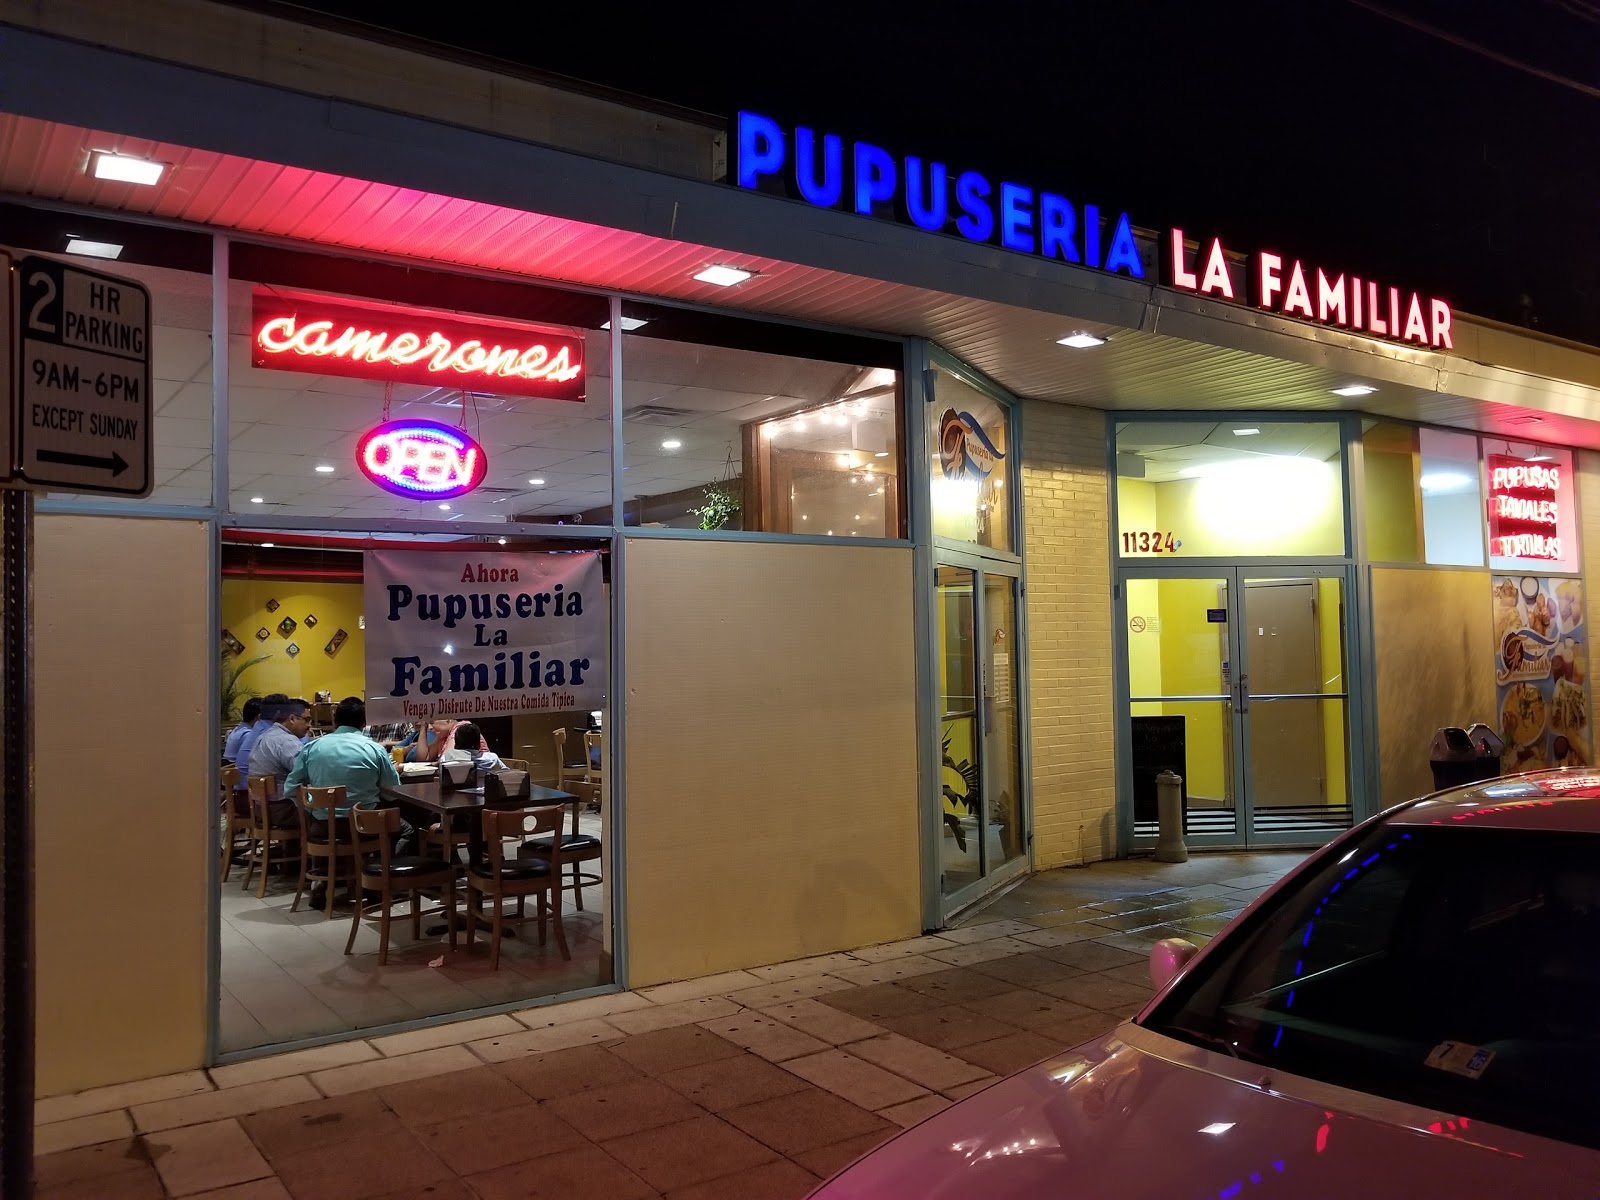 Restaurants Pupuseria La Familiar in Silver Spring MD